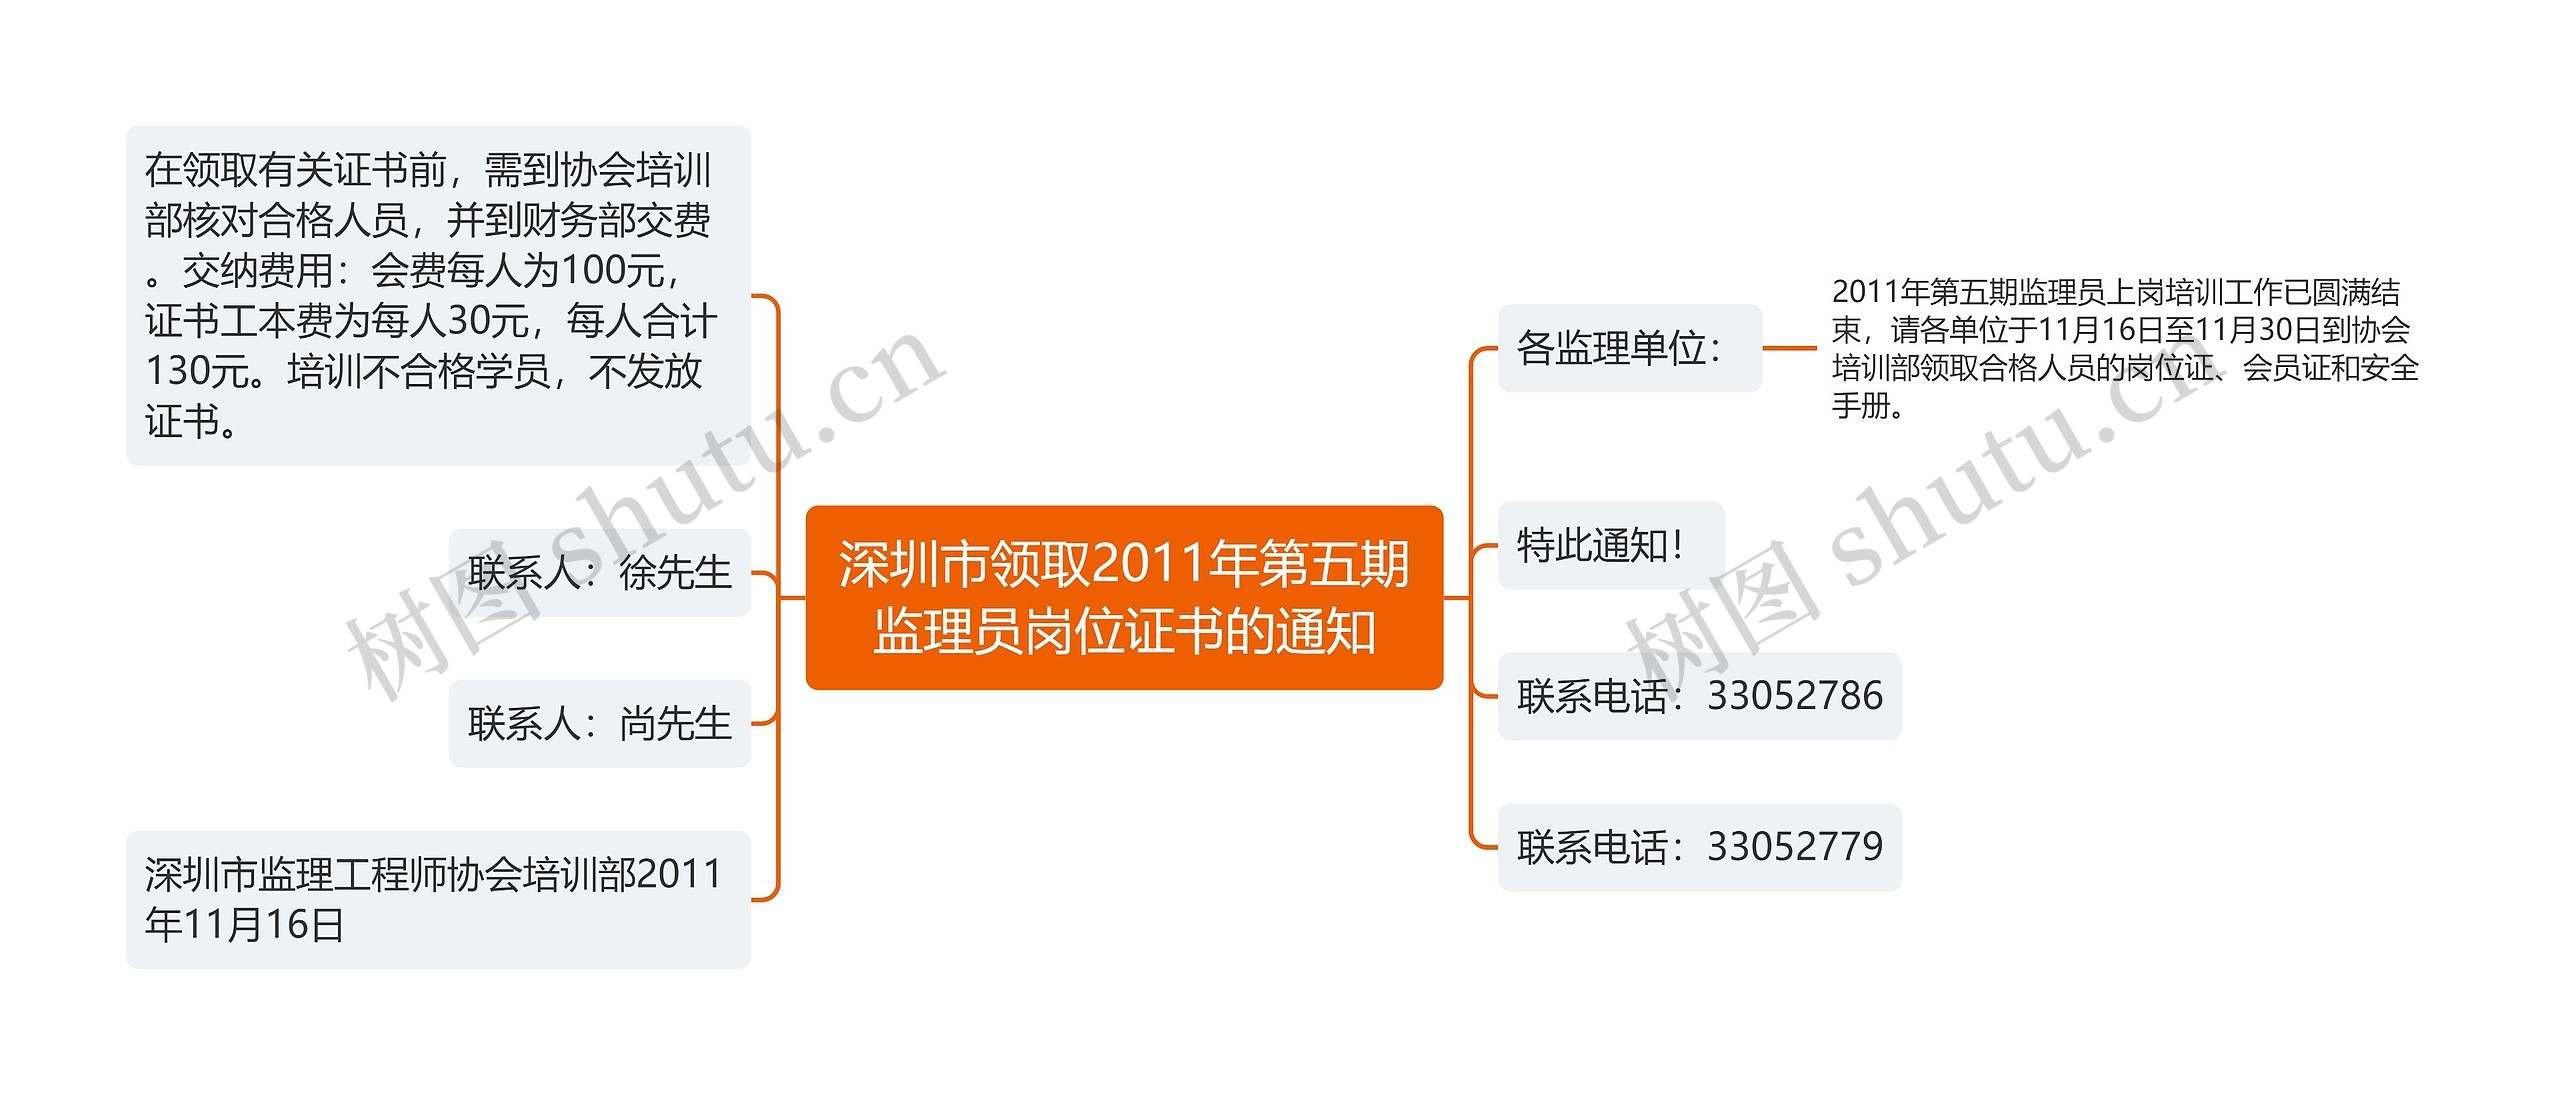 深圳市领取2011年第五期监理员岗位证书的通知思维导图